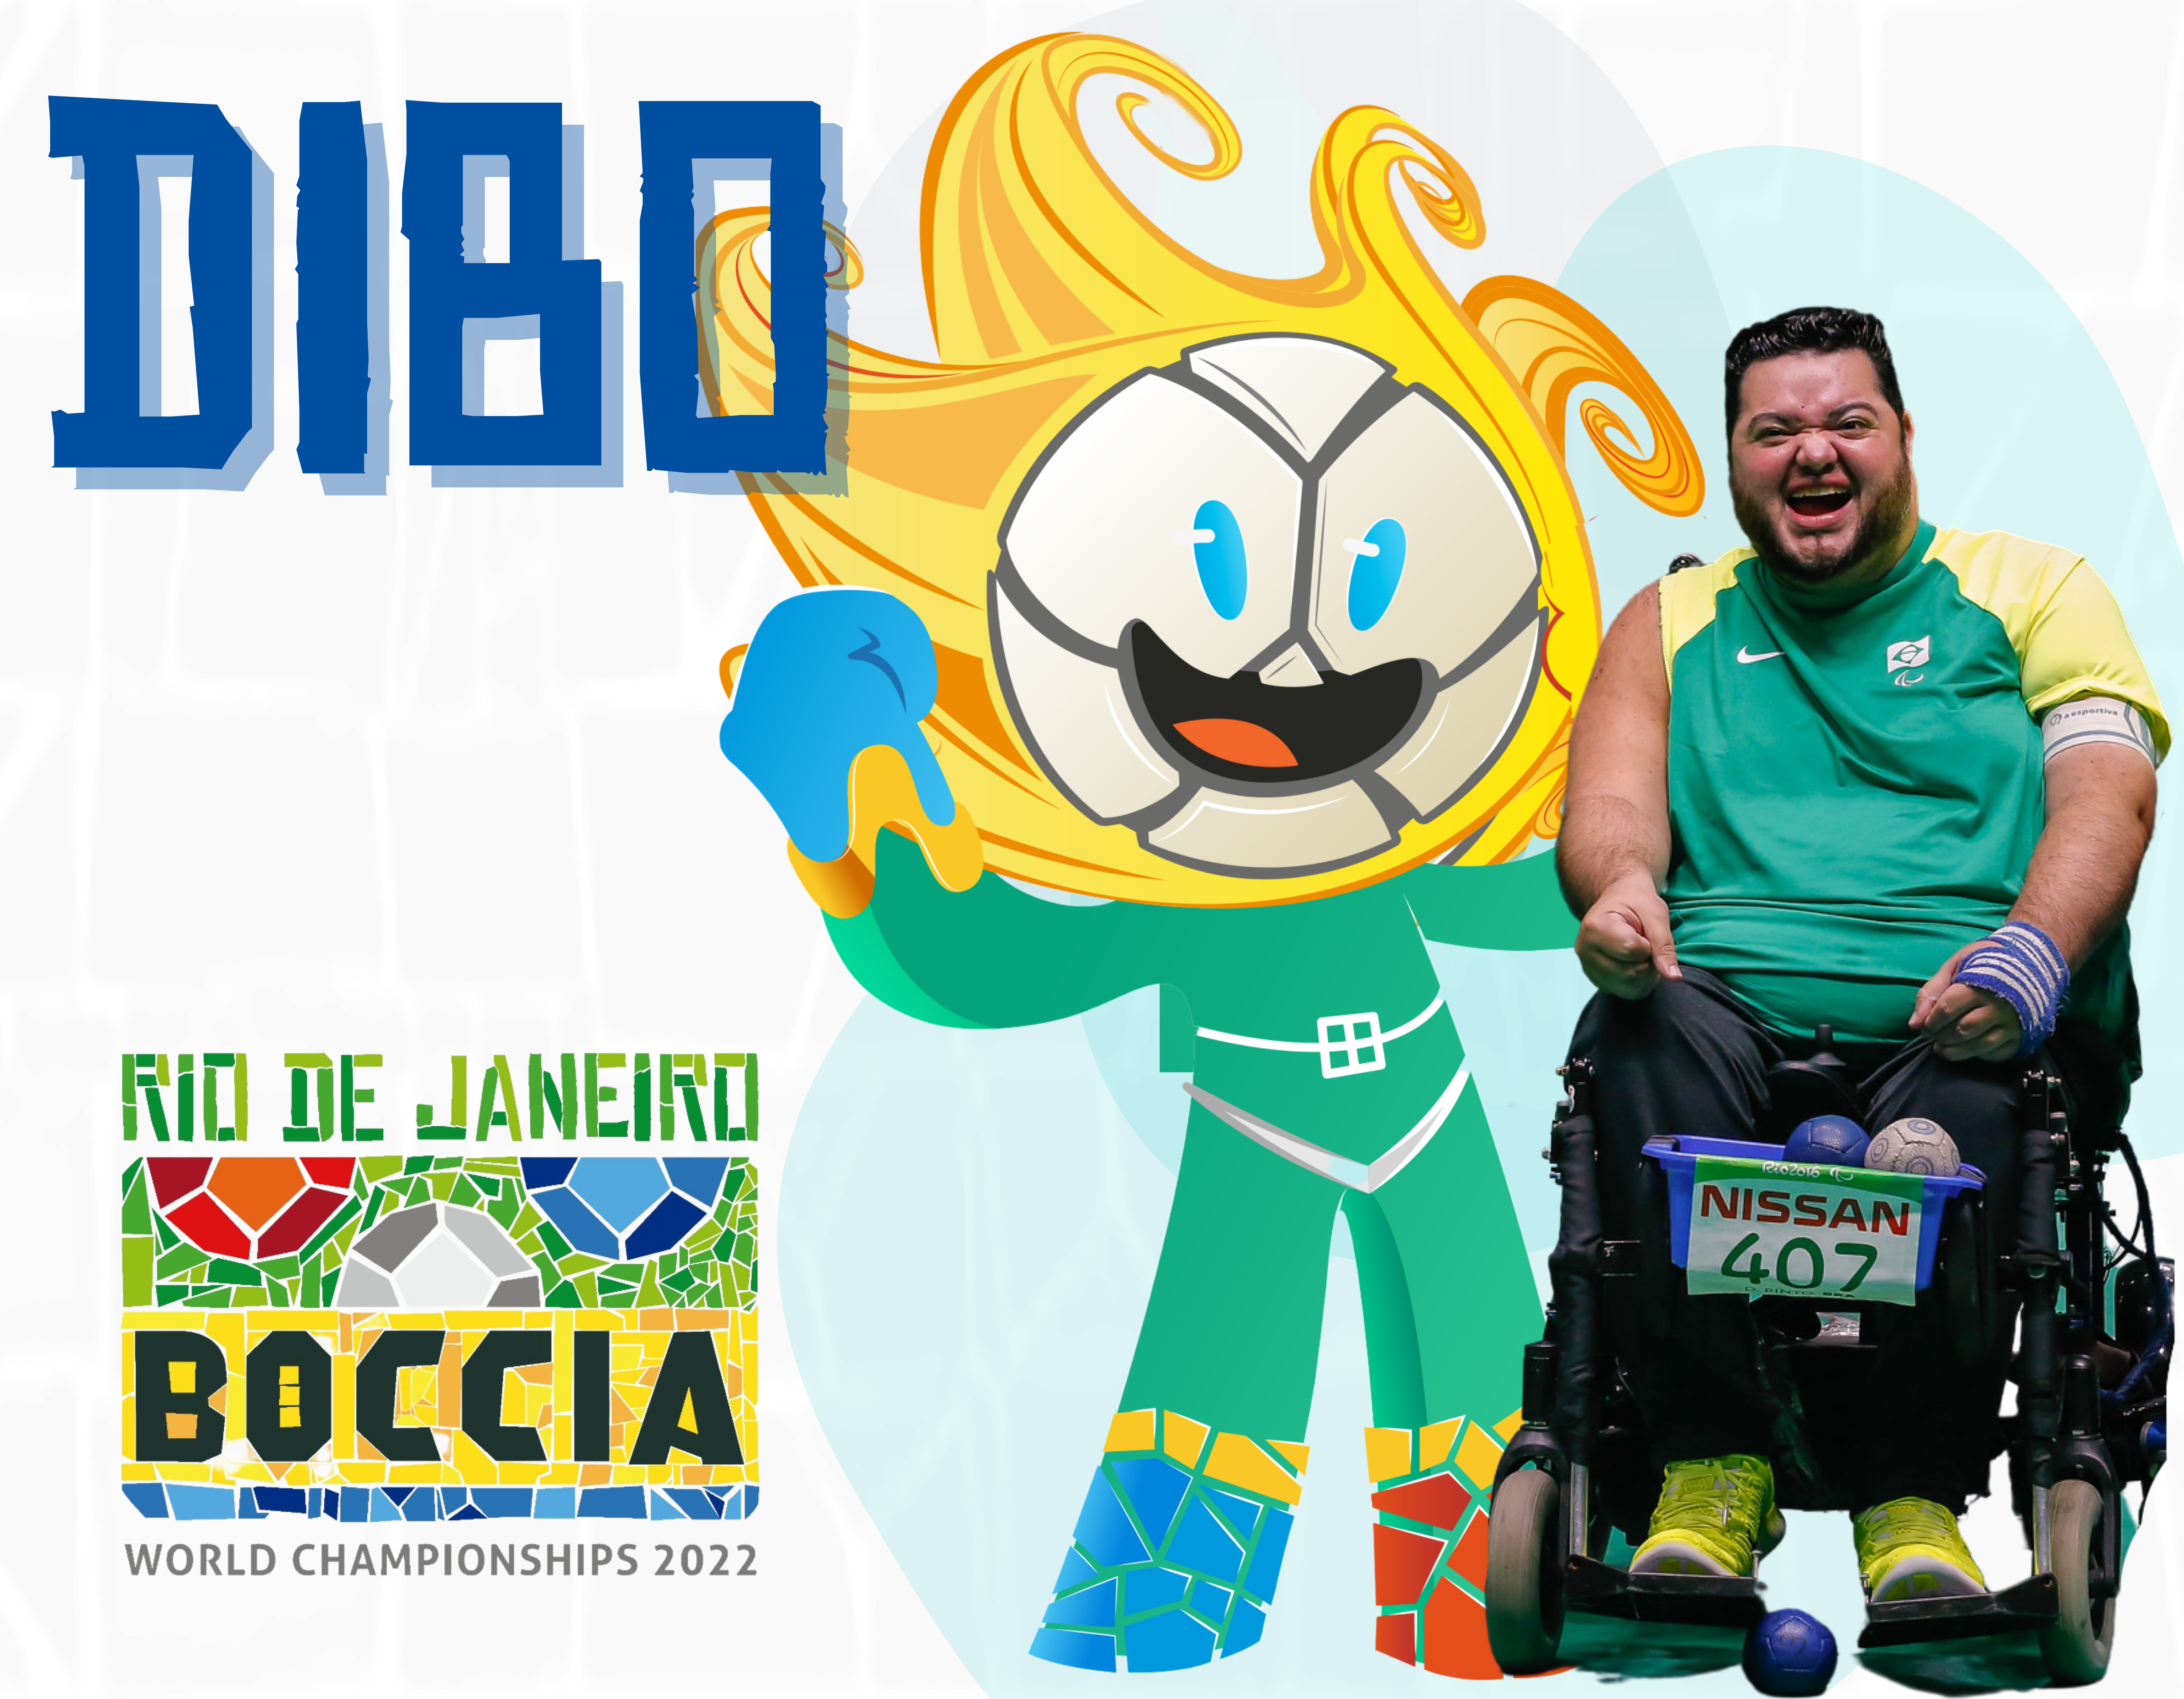 Mascote dos Jogos Parapan-Americanos de Jovens São Paulo 2017 terá nome  escolhido em votação popular - CPB